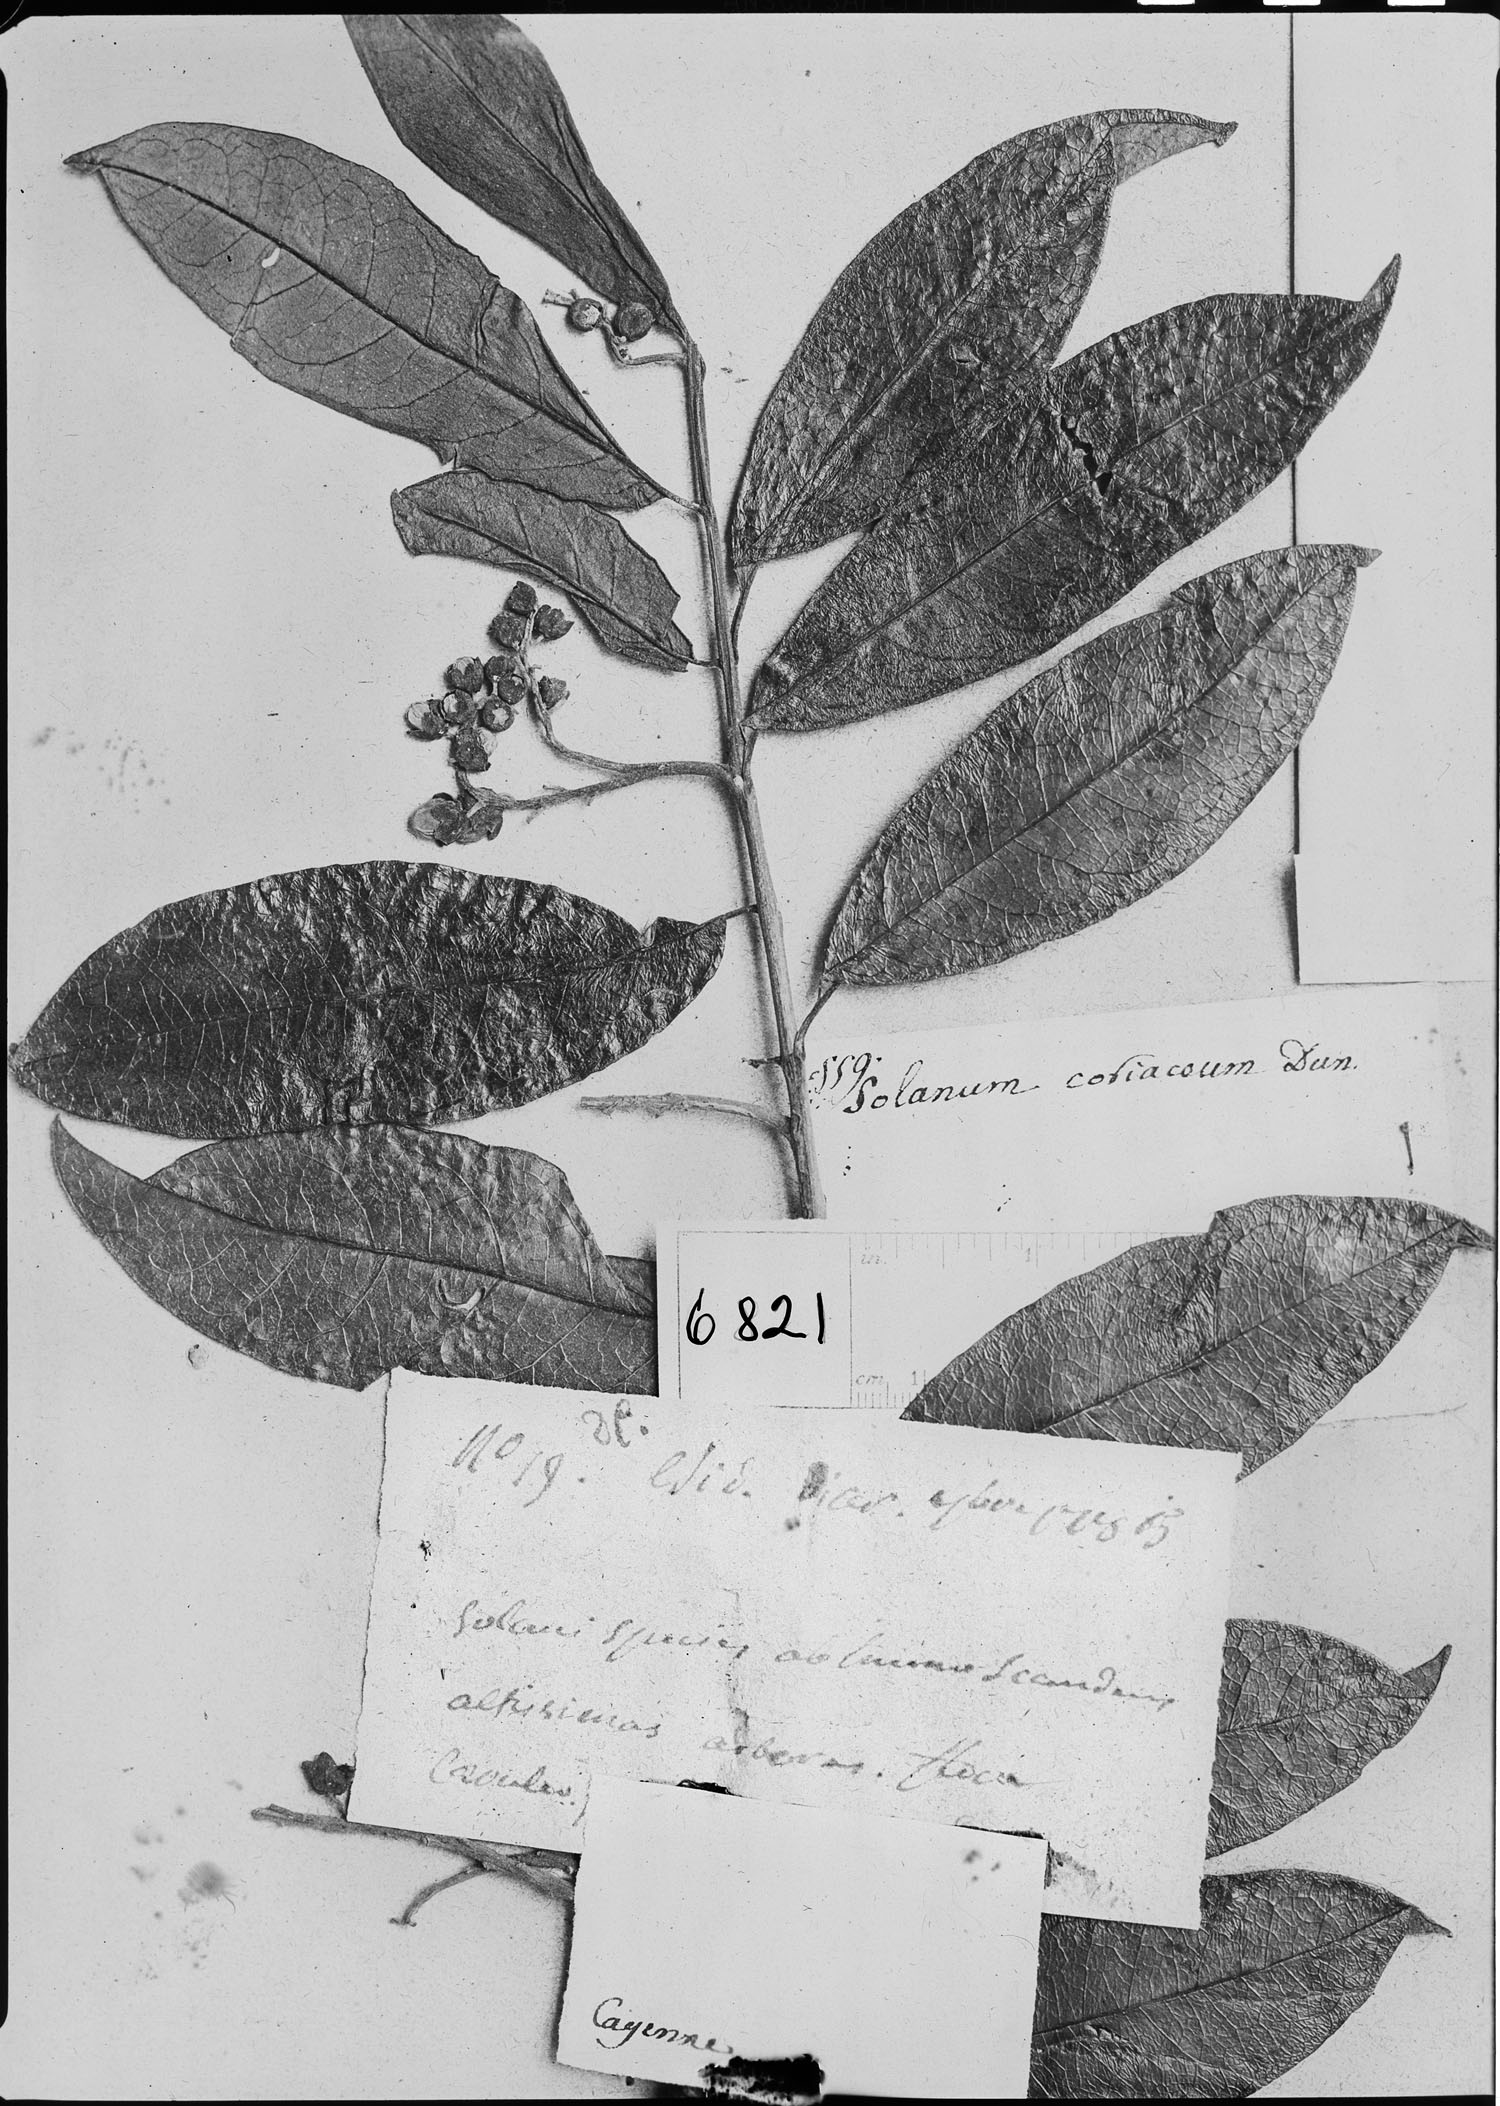 Solanum coriaceum image